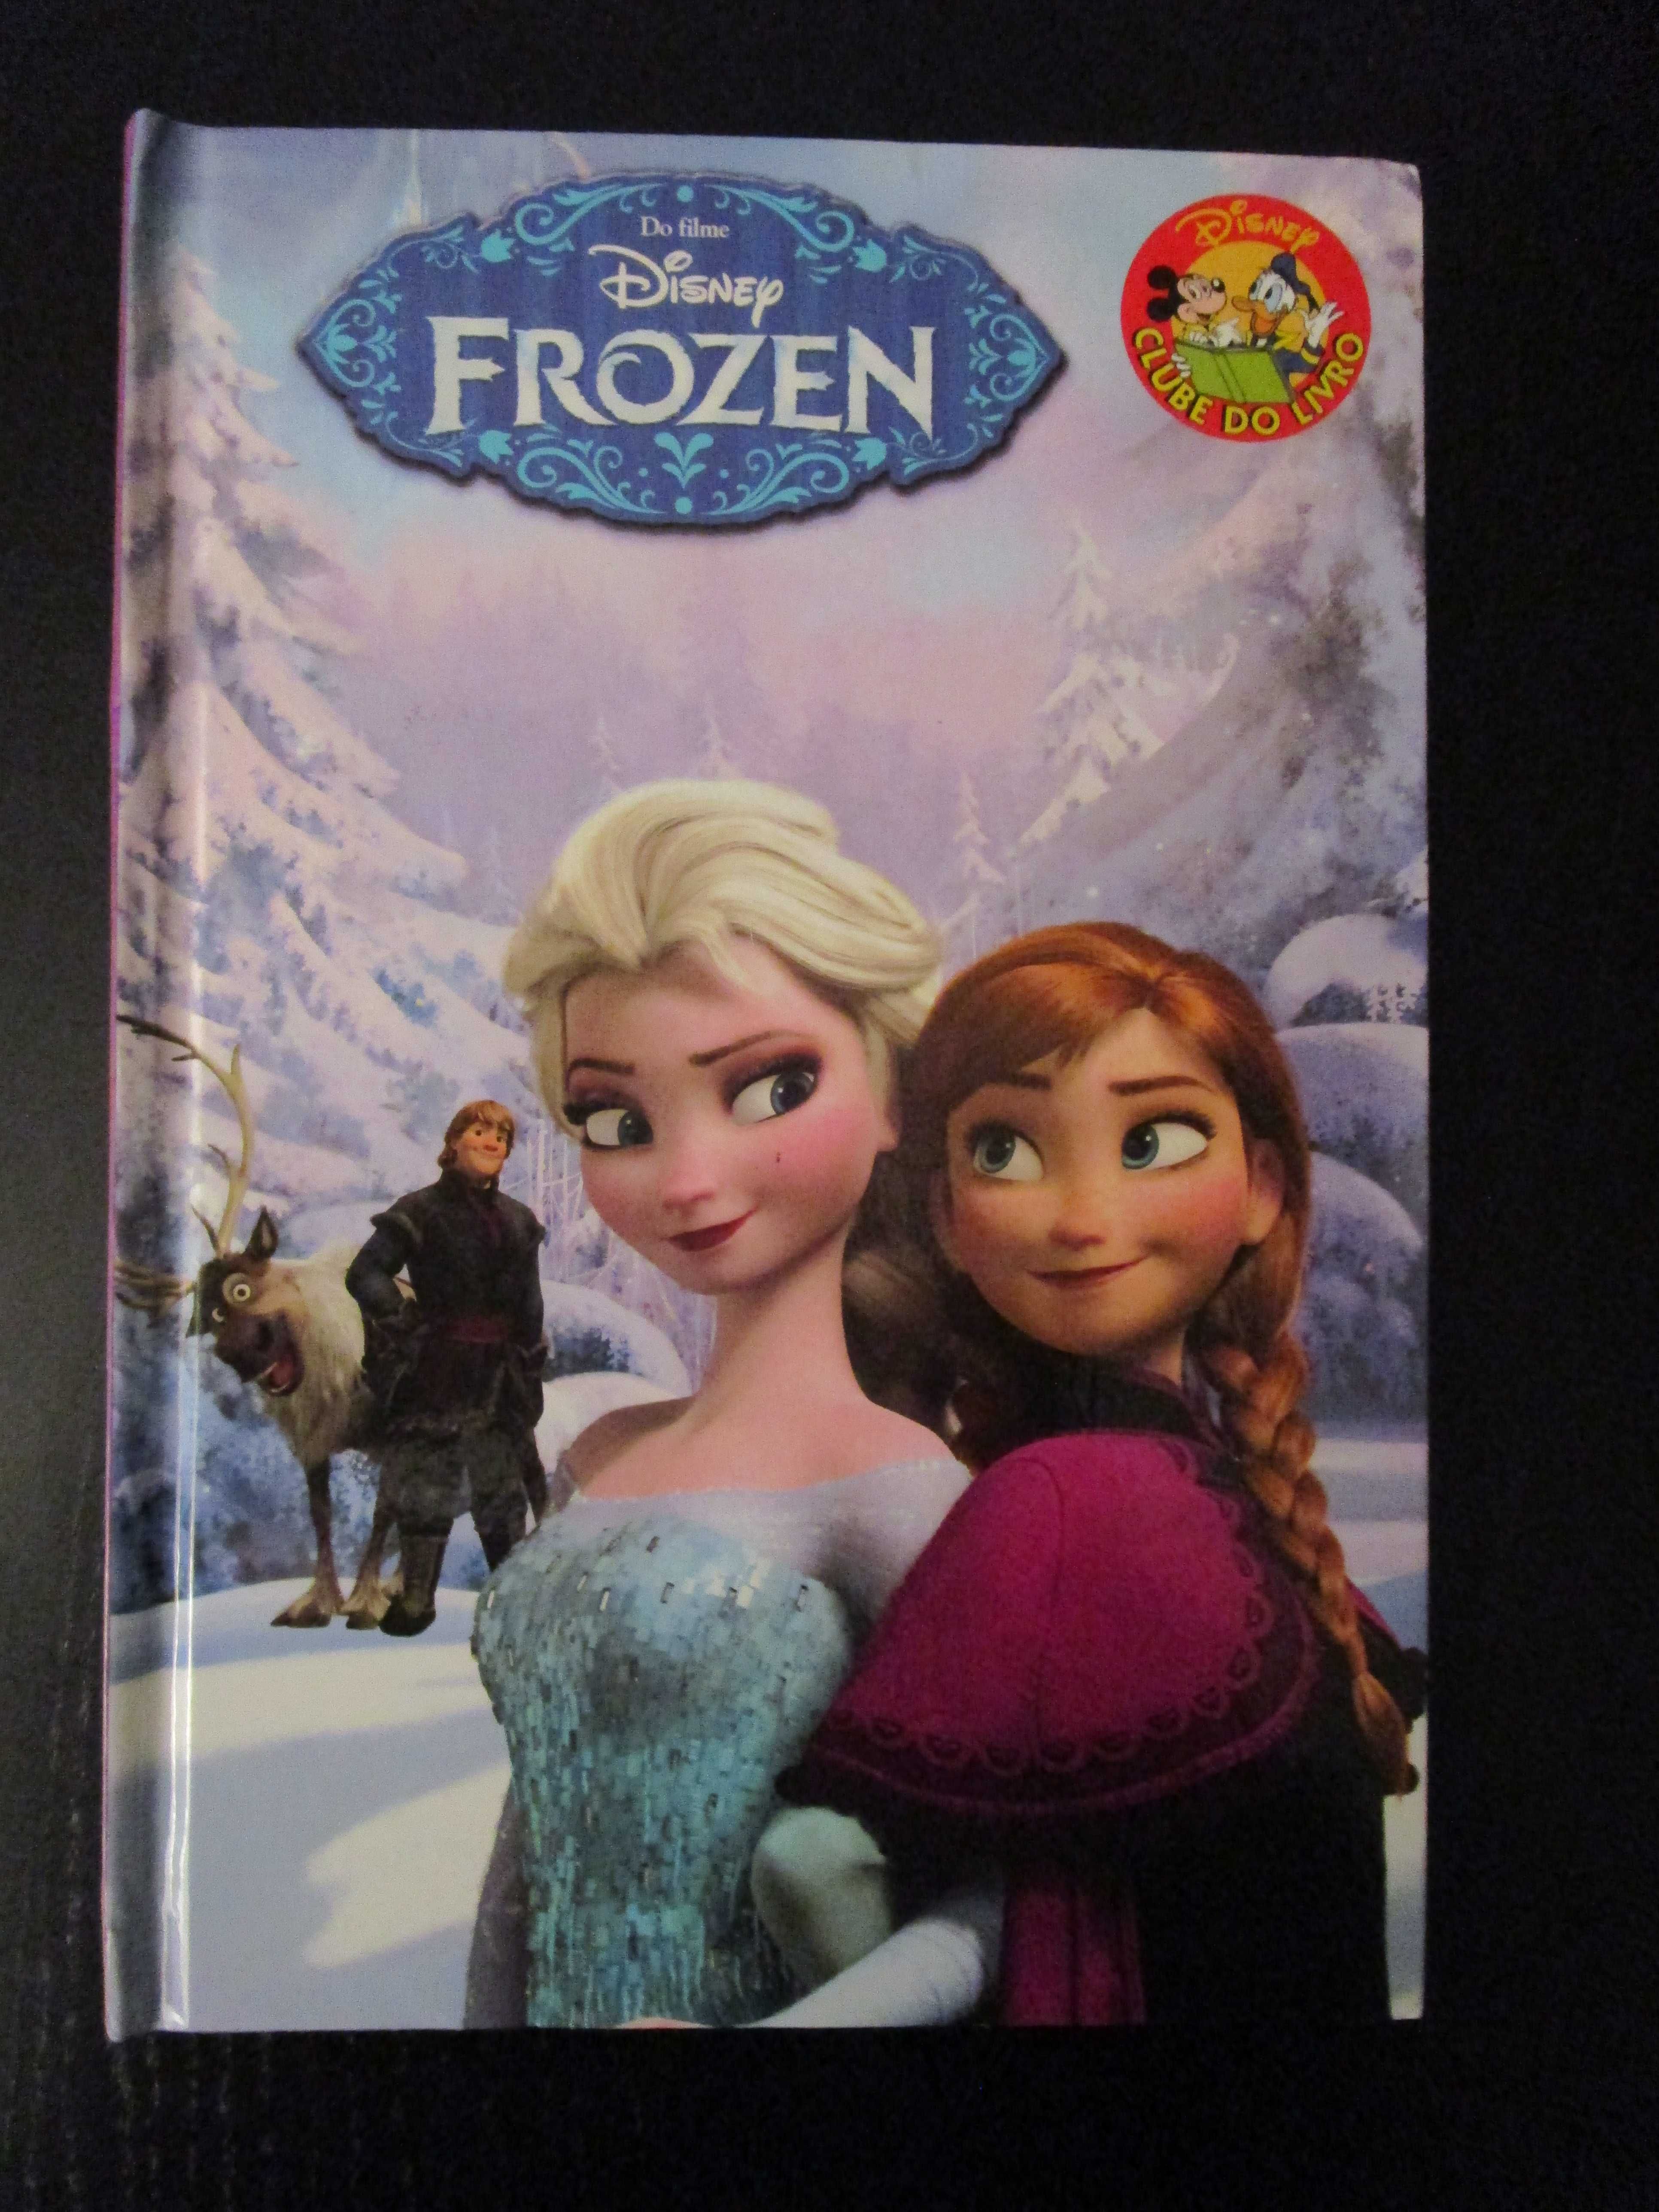 Livros Disney "Os 101 Dálmatas", "Frozen" e "Pequena Sereia" (5€ cada)